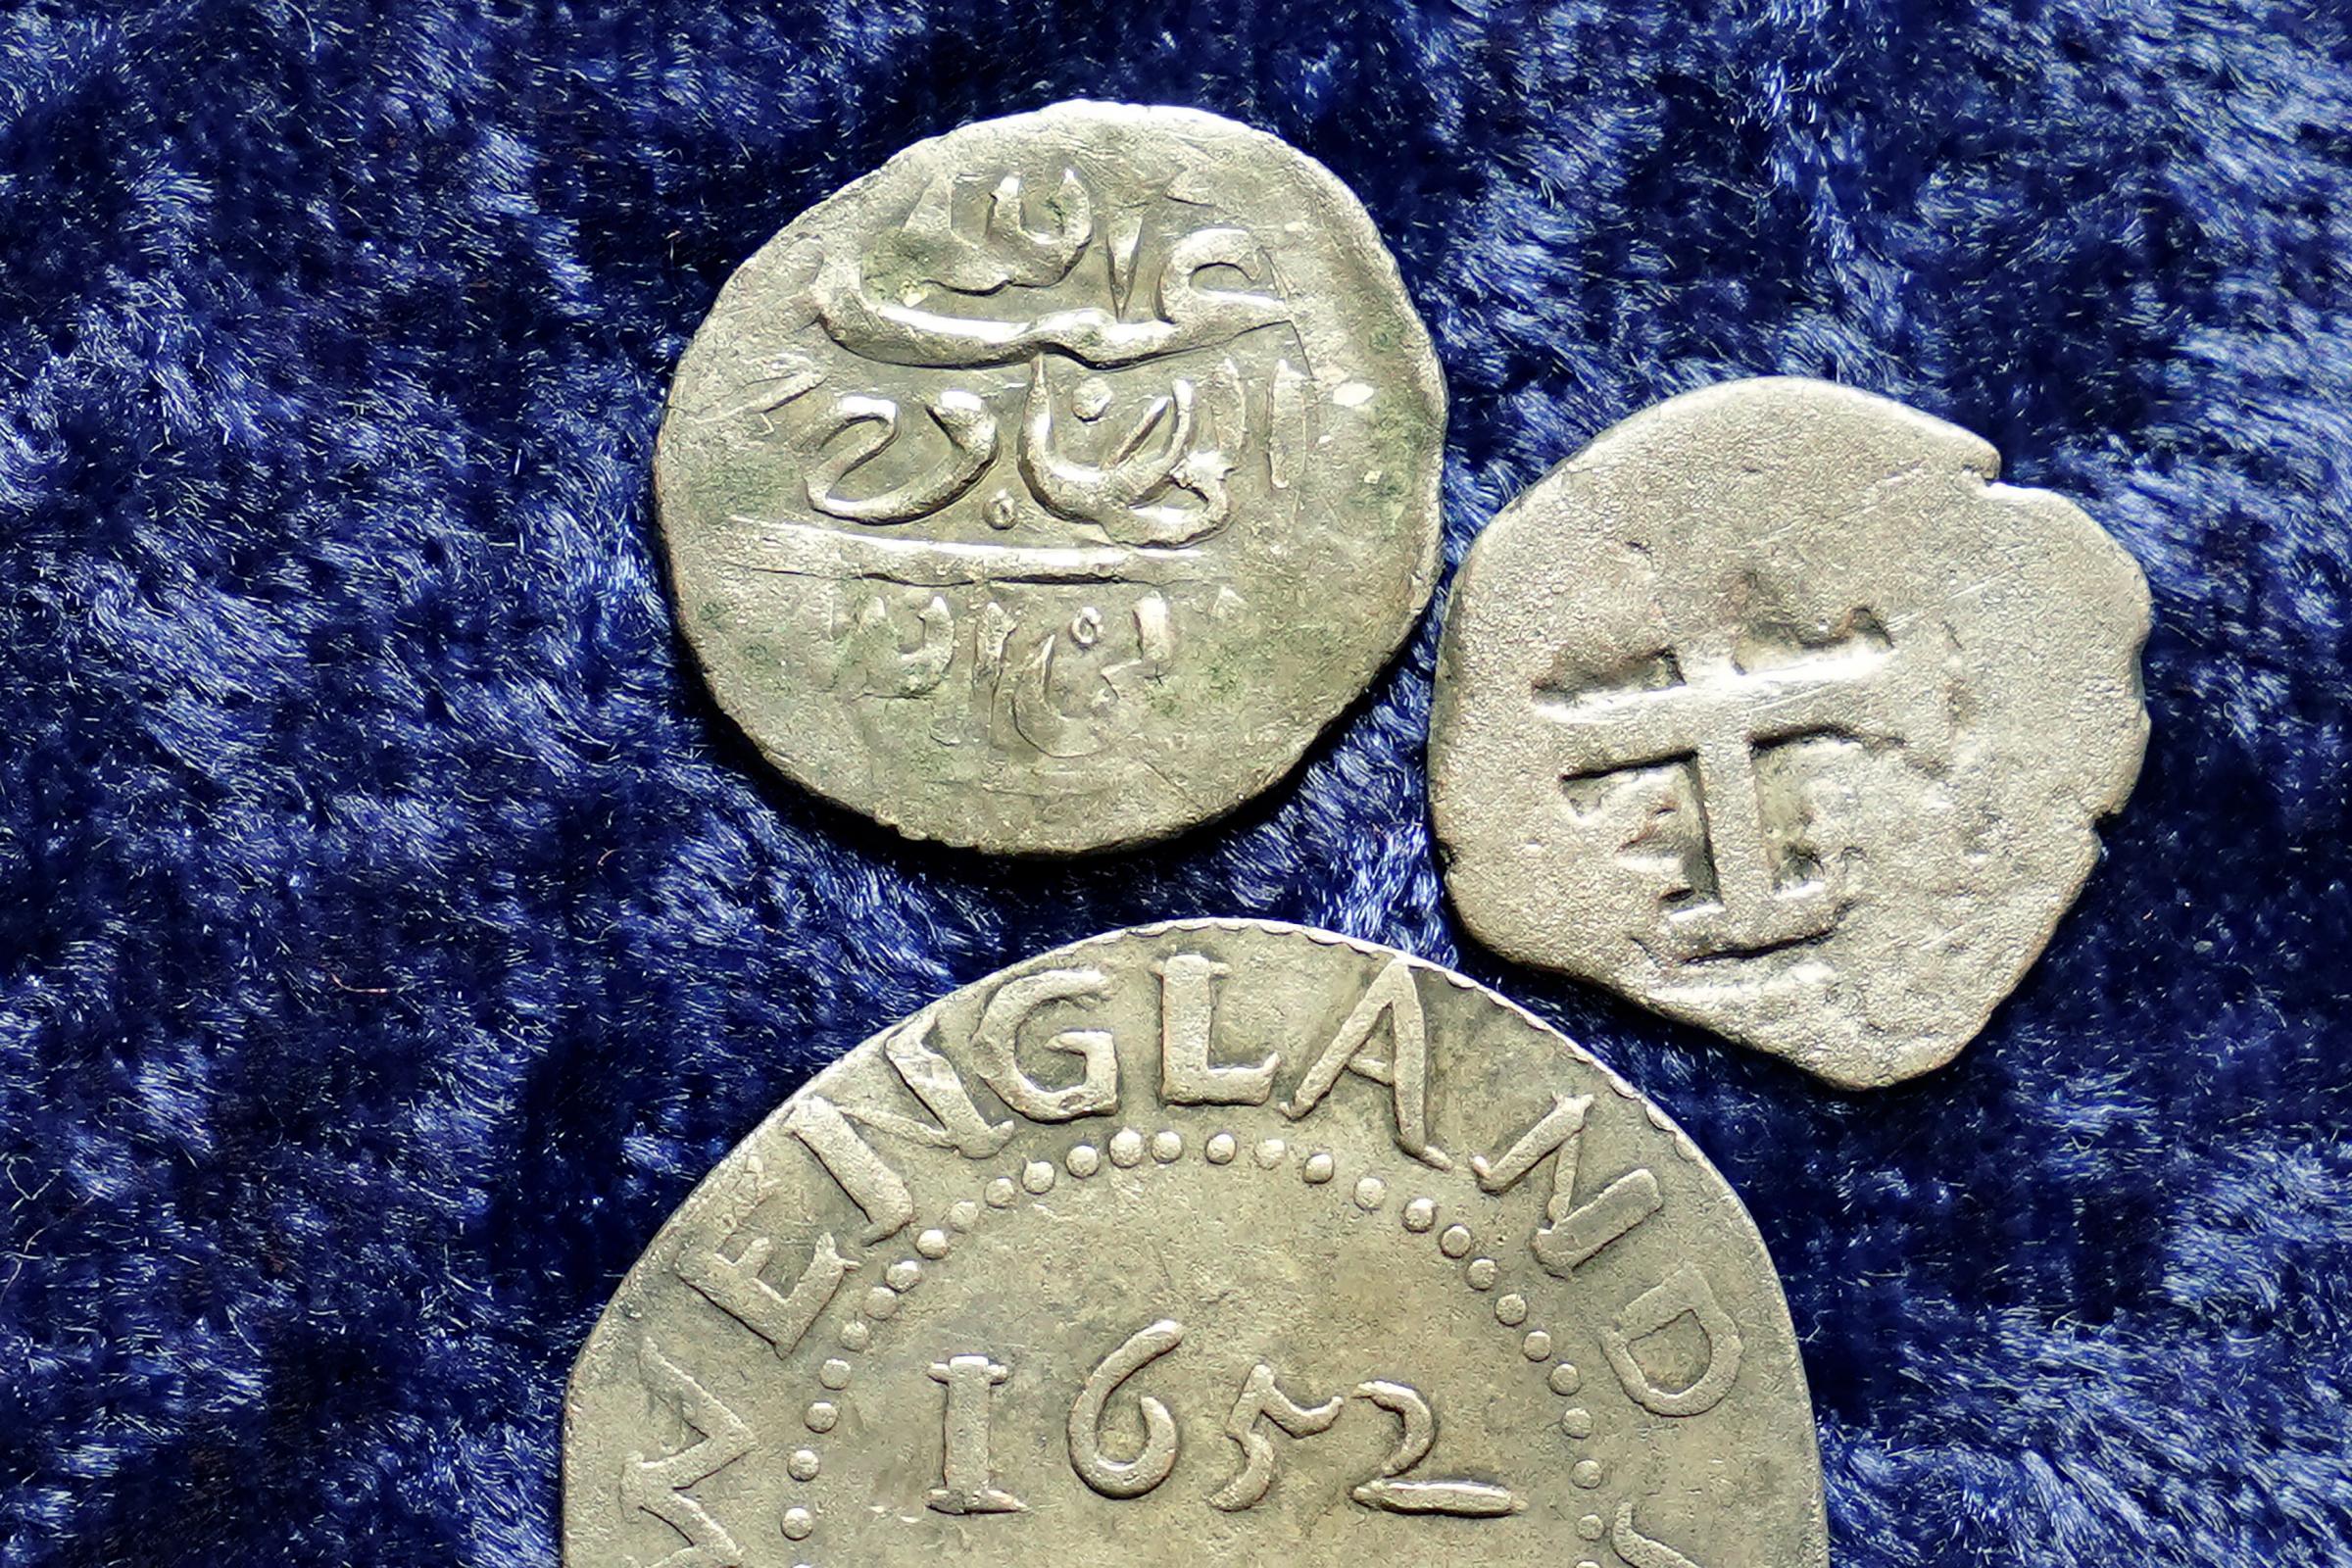 Une pièce d'argent arabe du 17ème siècle, en haut, que la recherche montre a été frappée en 1693 au Yémen, repose près d'un chêne shilling frappé en 1652 par la colonie de la baie du Massachusetts, ci-dessous, et d'une demi-pièce réelle espagnole de 1727, à droite.  La pièce arabe a été trouvée à